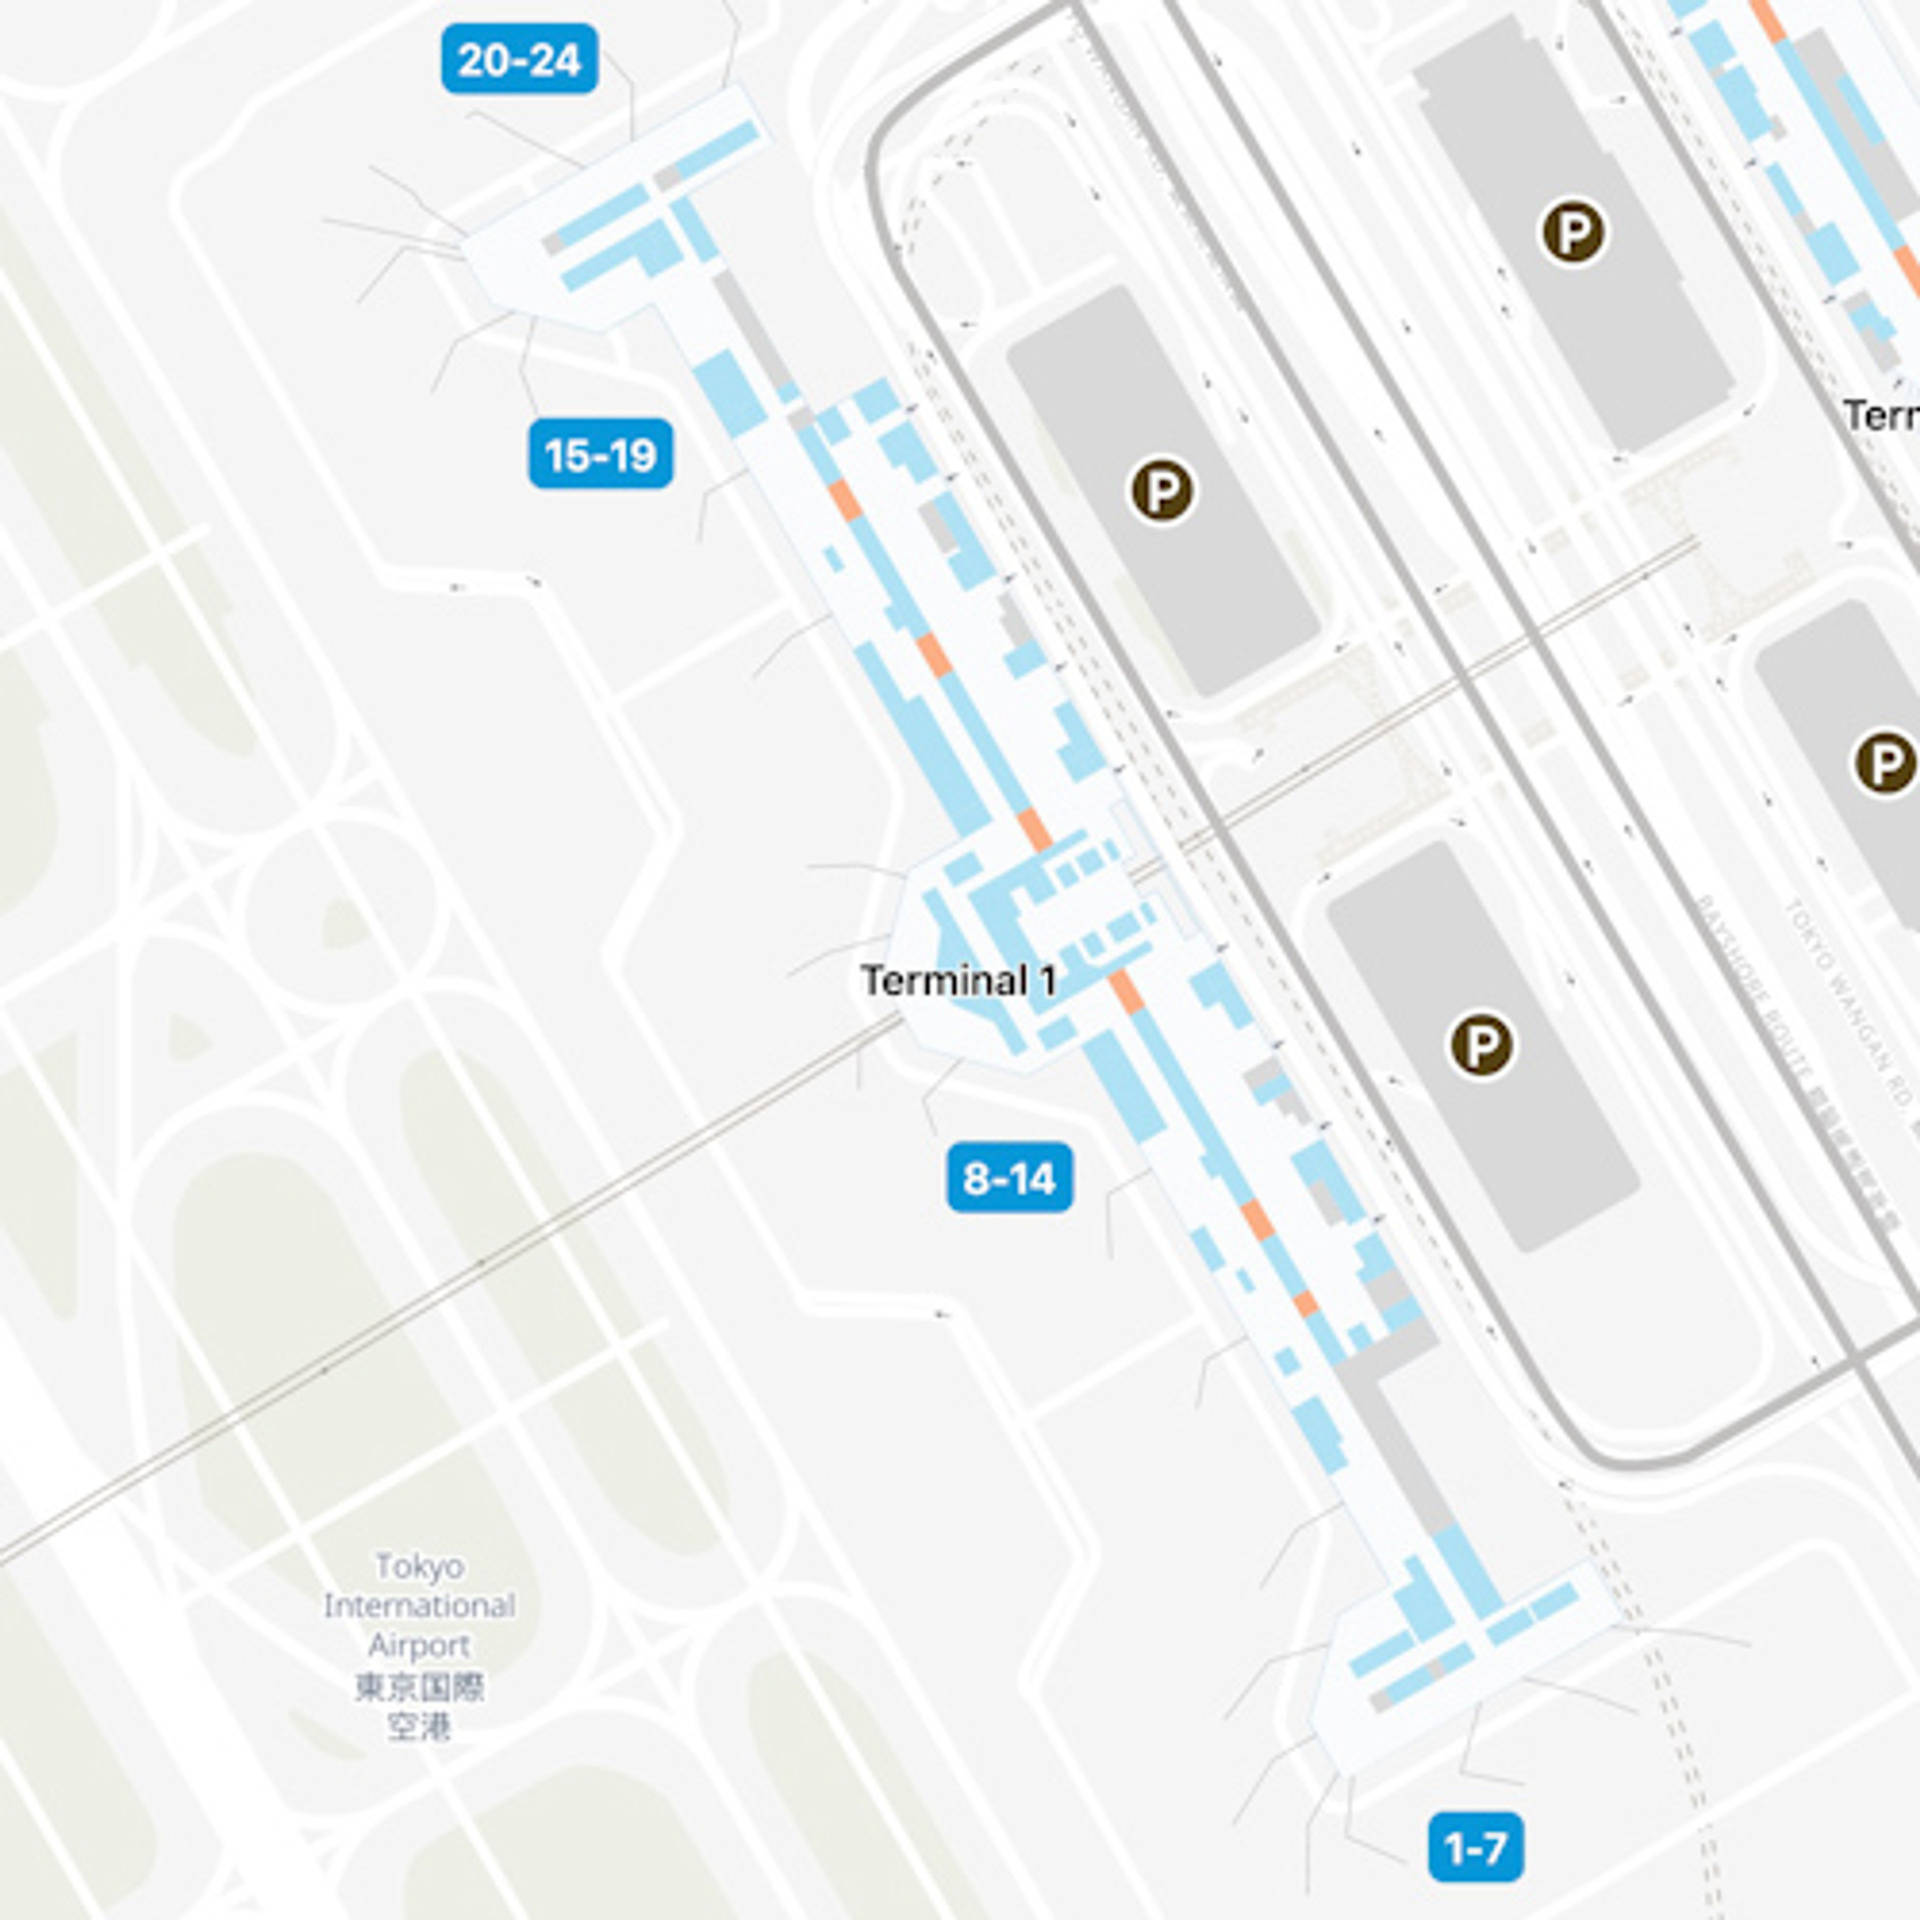 Tokyo Haneda Airport Map | HND Terminal Guide